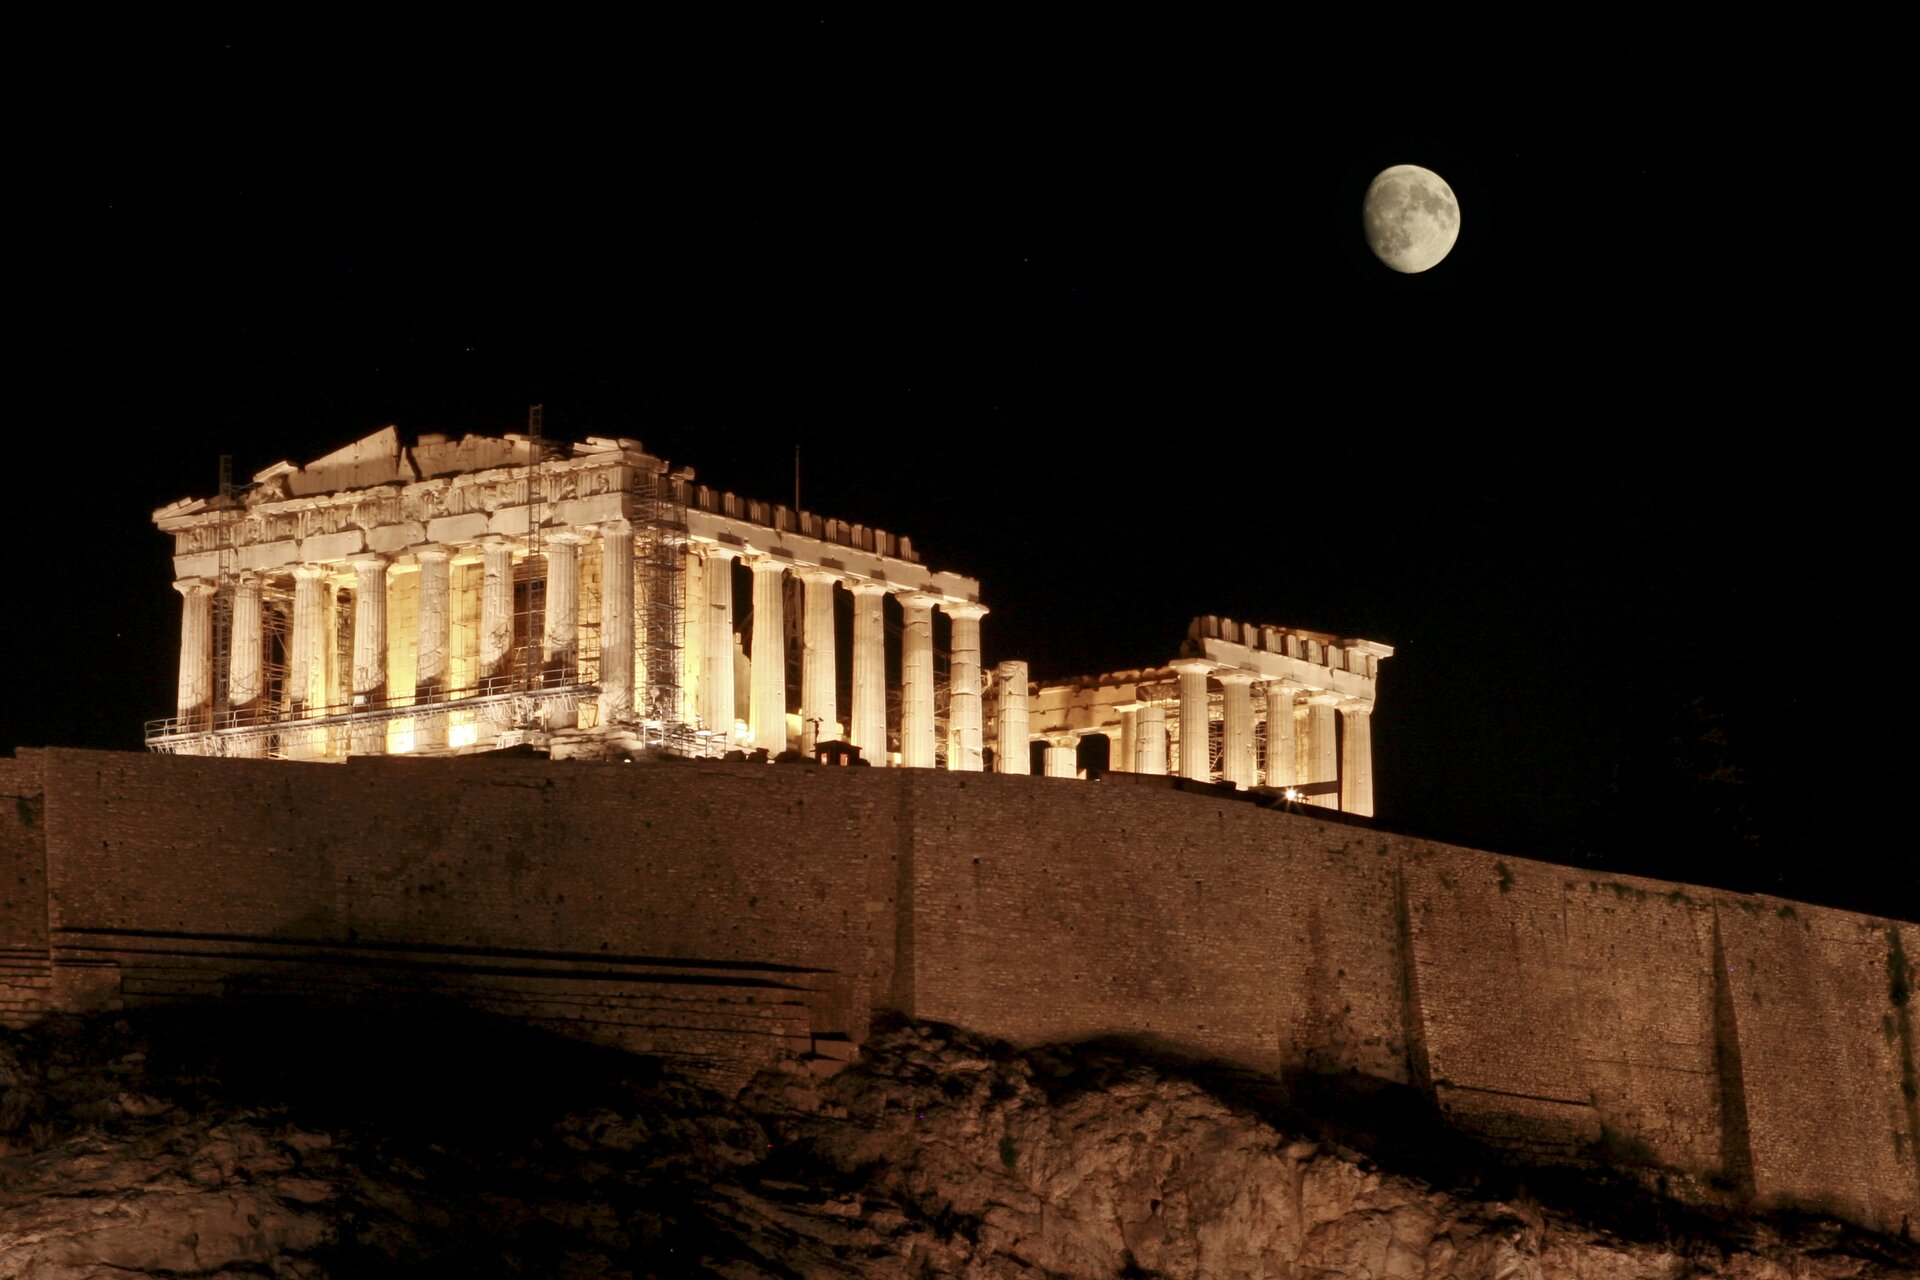 Zdjęcie przedstawia Akropol, na którym widoczny jest Partenon podświetlony światłami w nocy. Zdjęcie zostało zrobione z niższego poziomu, widoczny jest Partenon na wzniesieniu. Niebo jest czarne. Po prawej stronie nad Partenonem widoczny jest prawie cały Księżyc. 